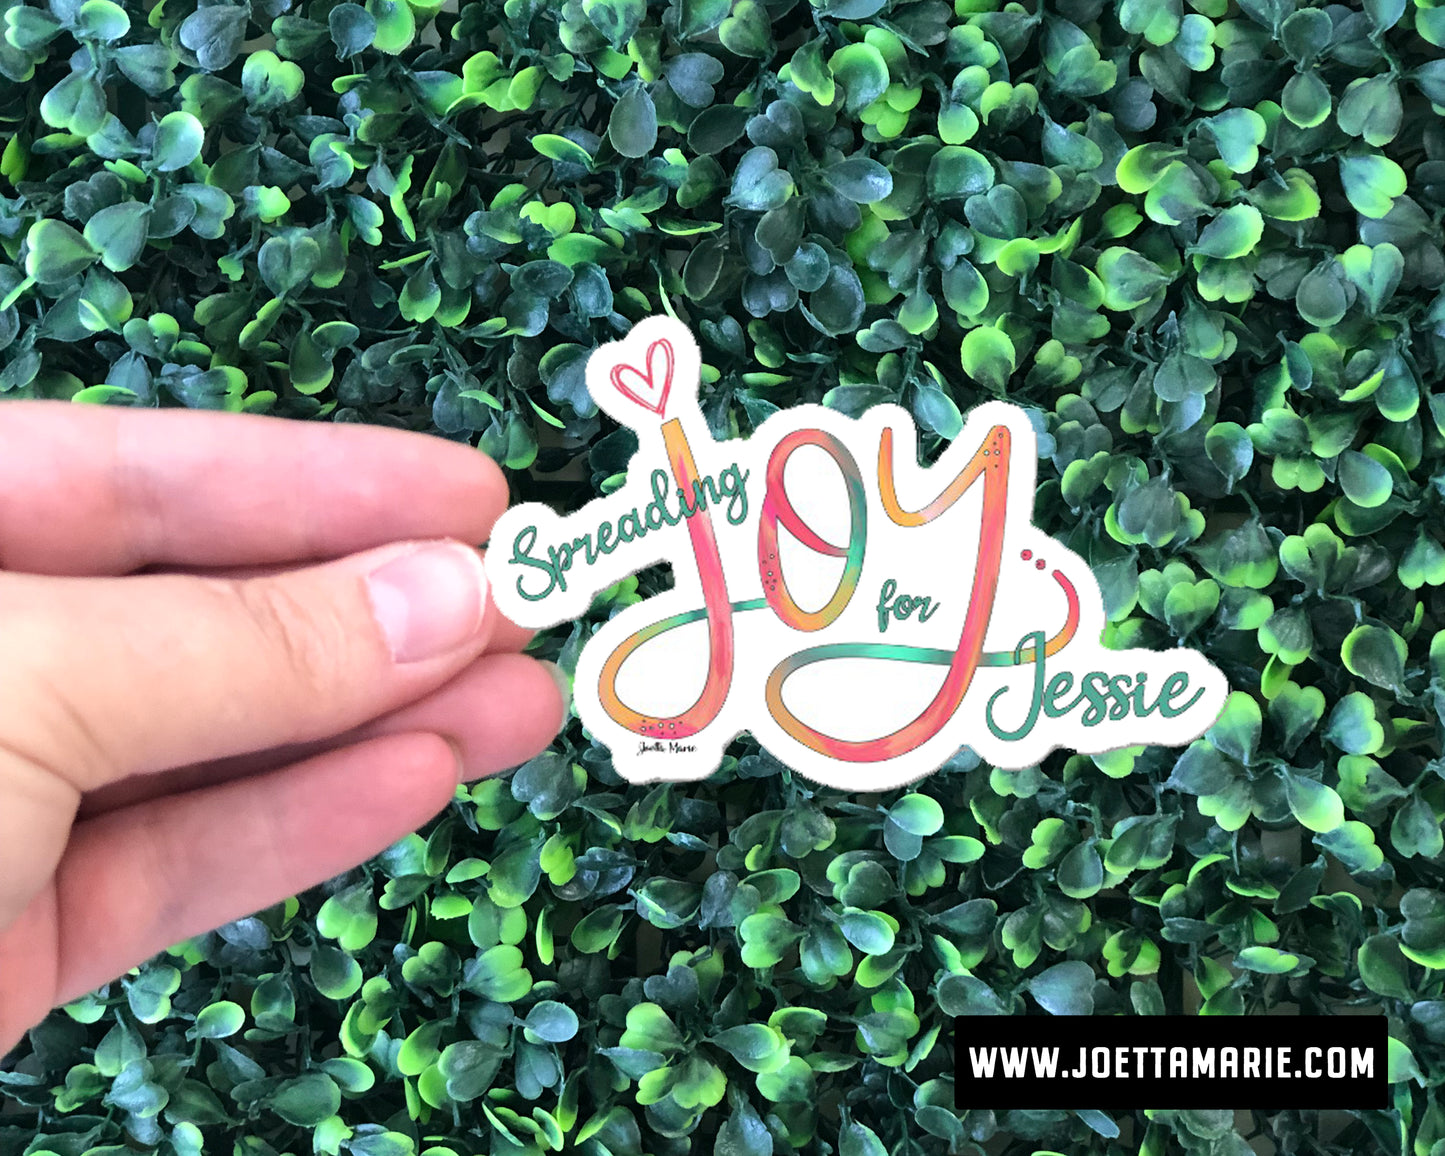 Spreading Joy for Jessie Sticker